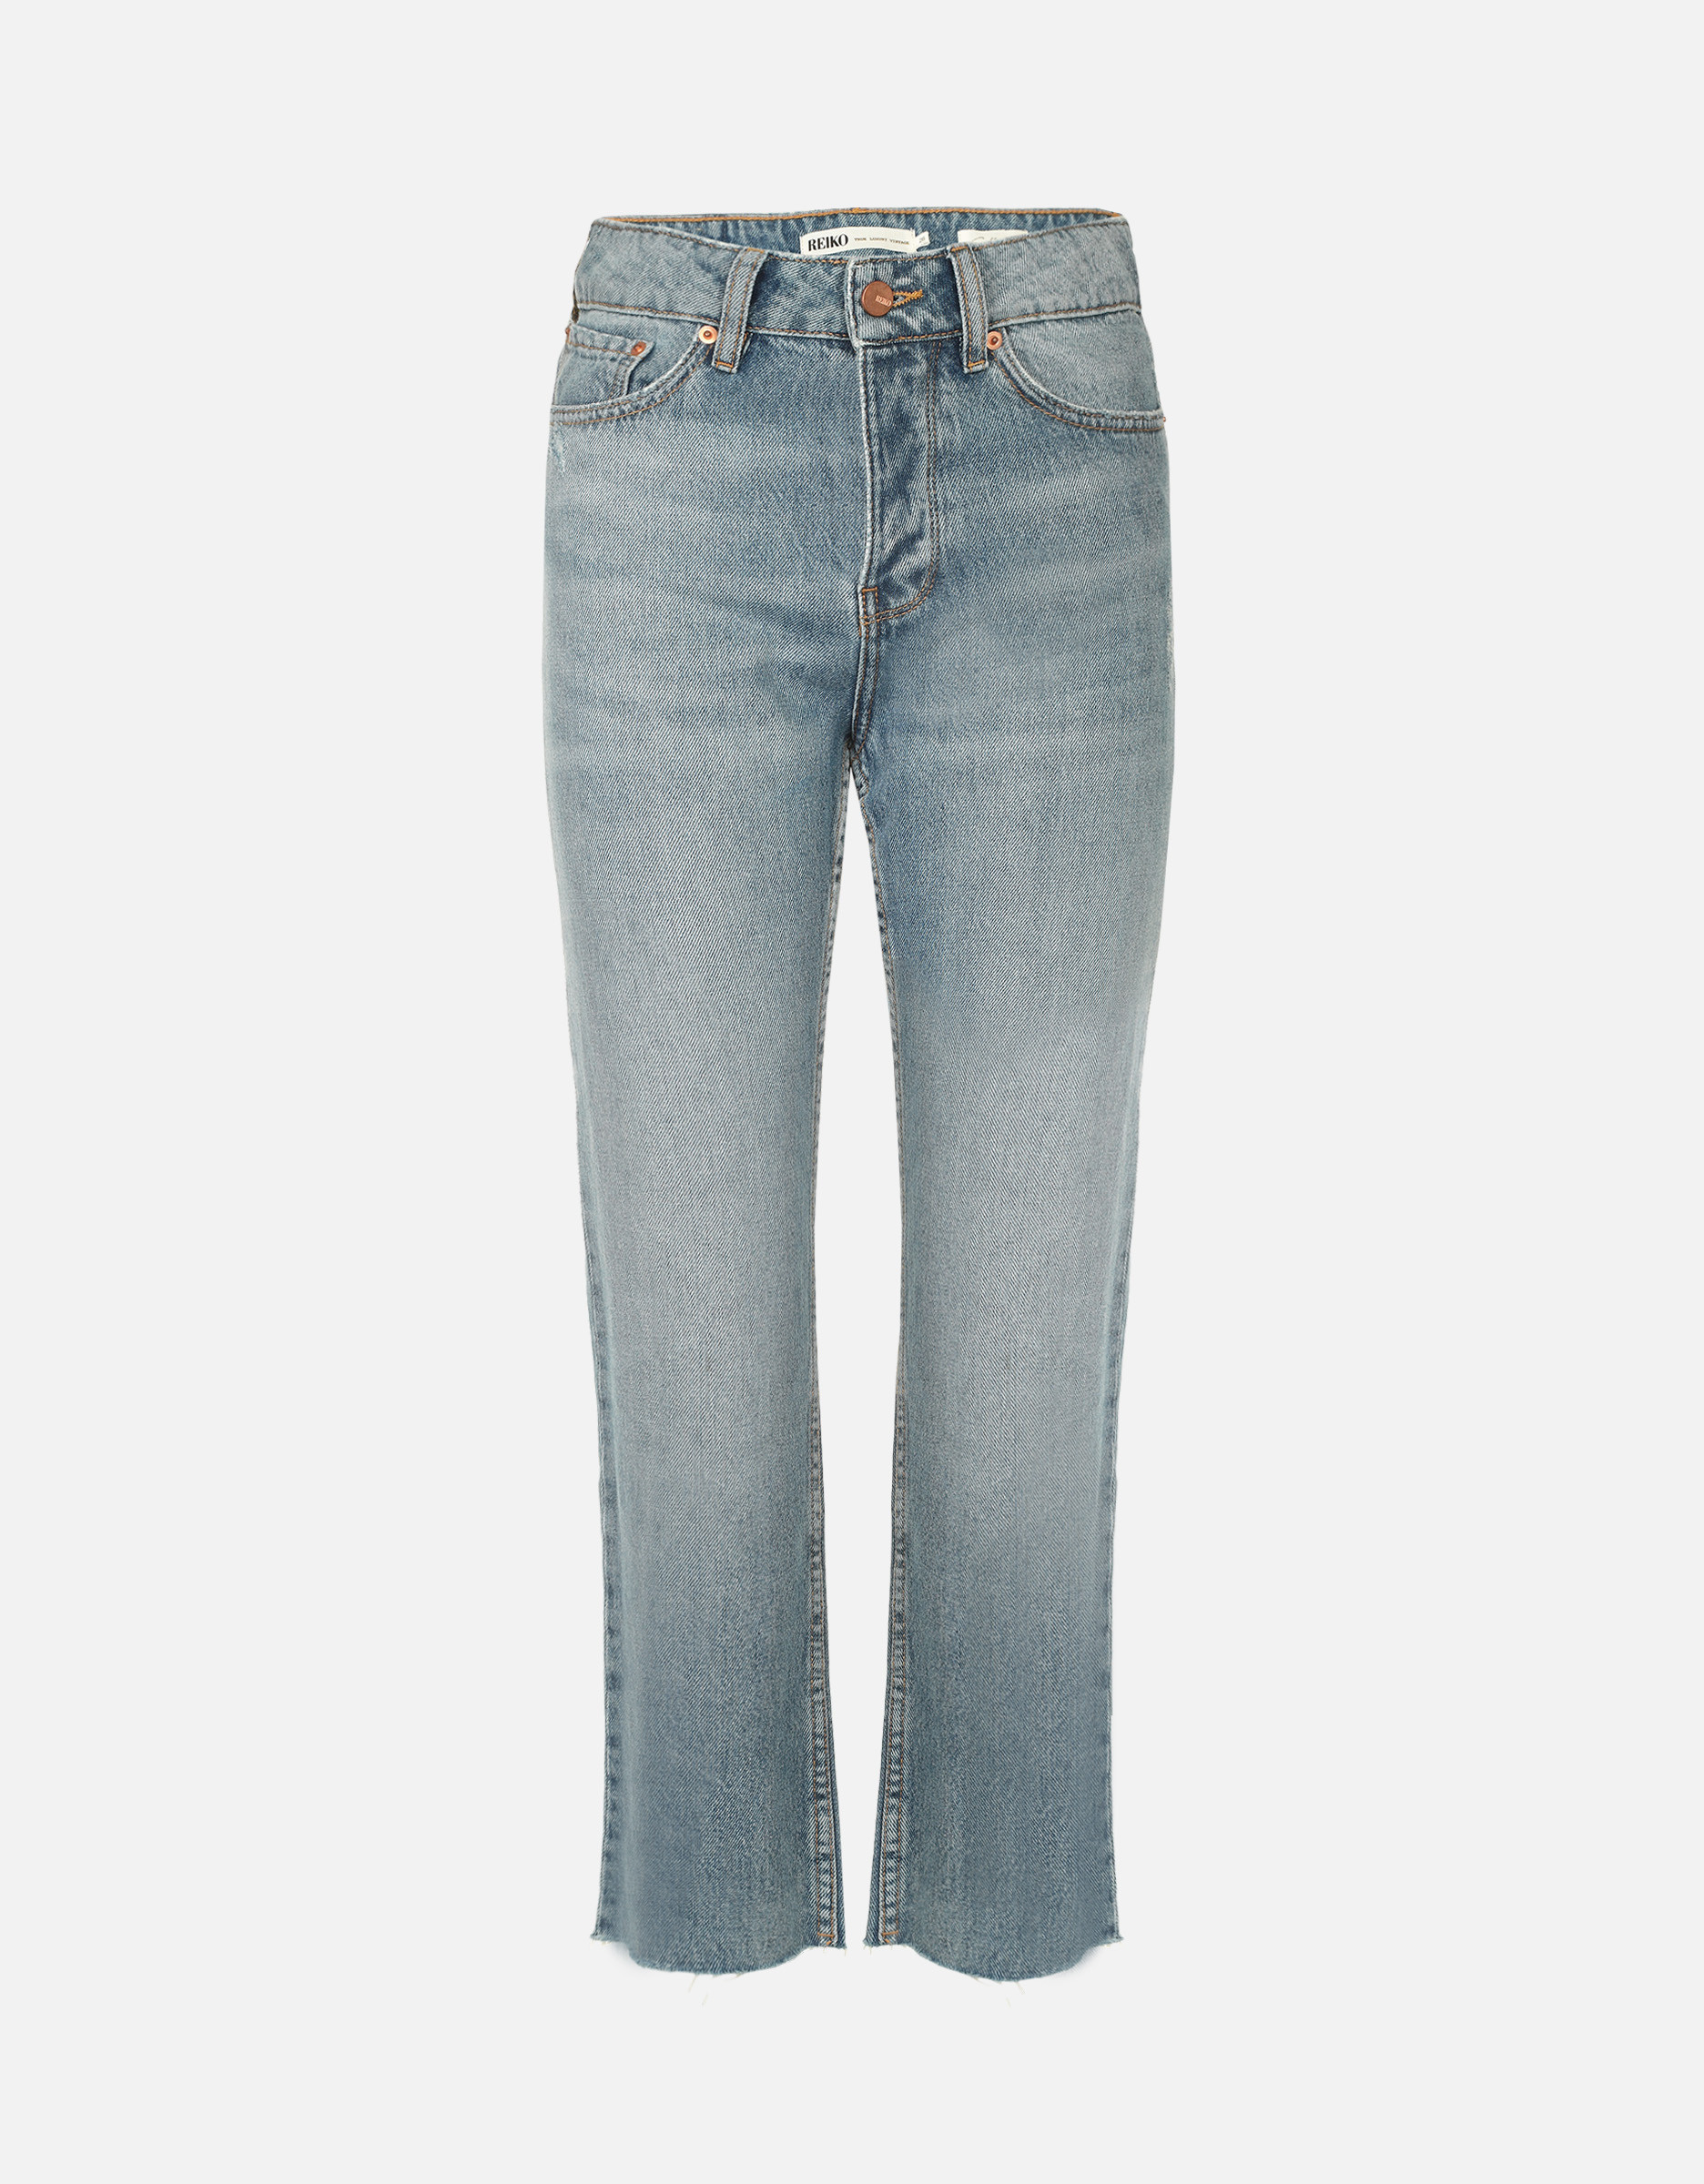 High waist jean Milo DNM B-214 - BLUE - Outlet vêtement femme - Reiko Jeans